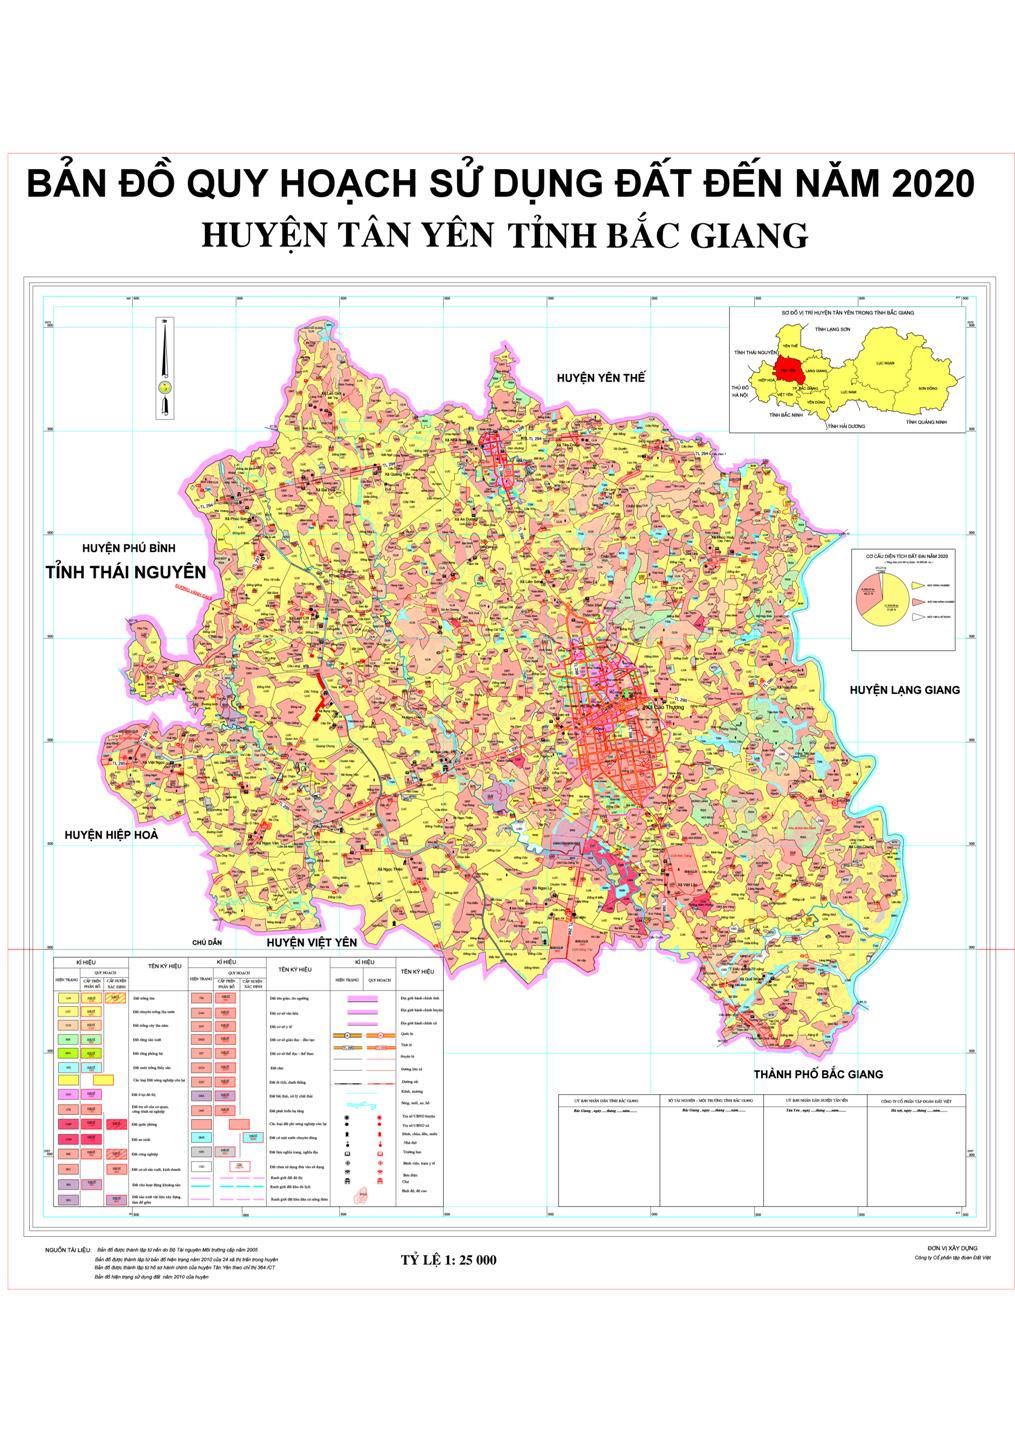 Bản đồ quy hoạch sử dụng đất huyện Tân Yên đến năm 2020